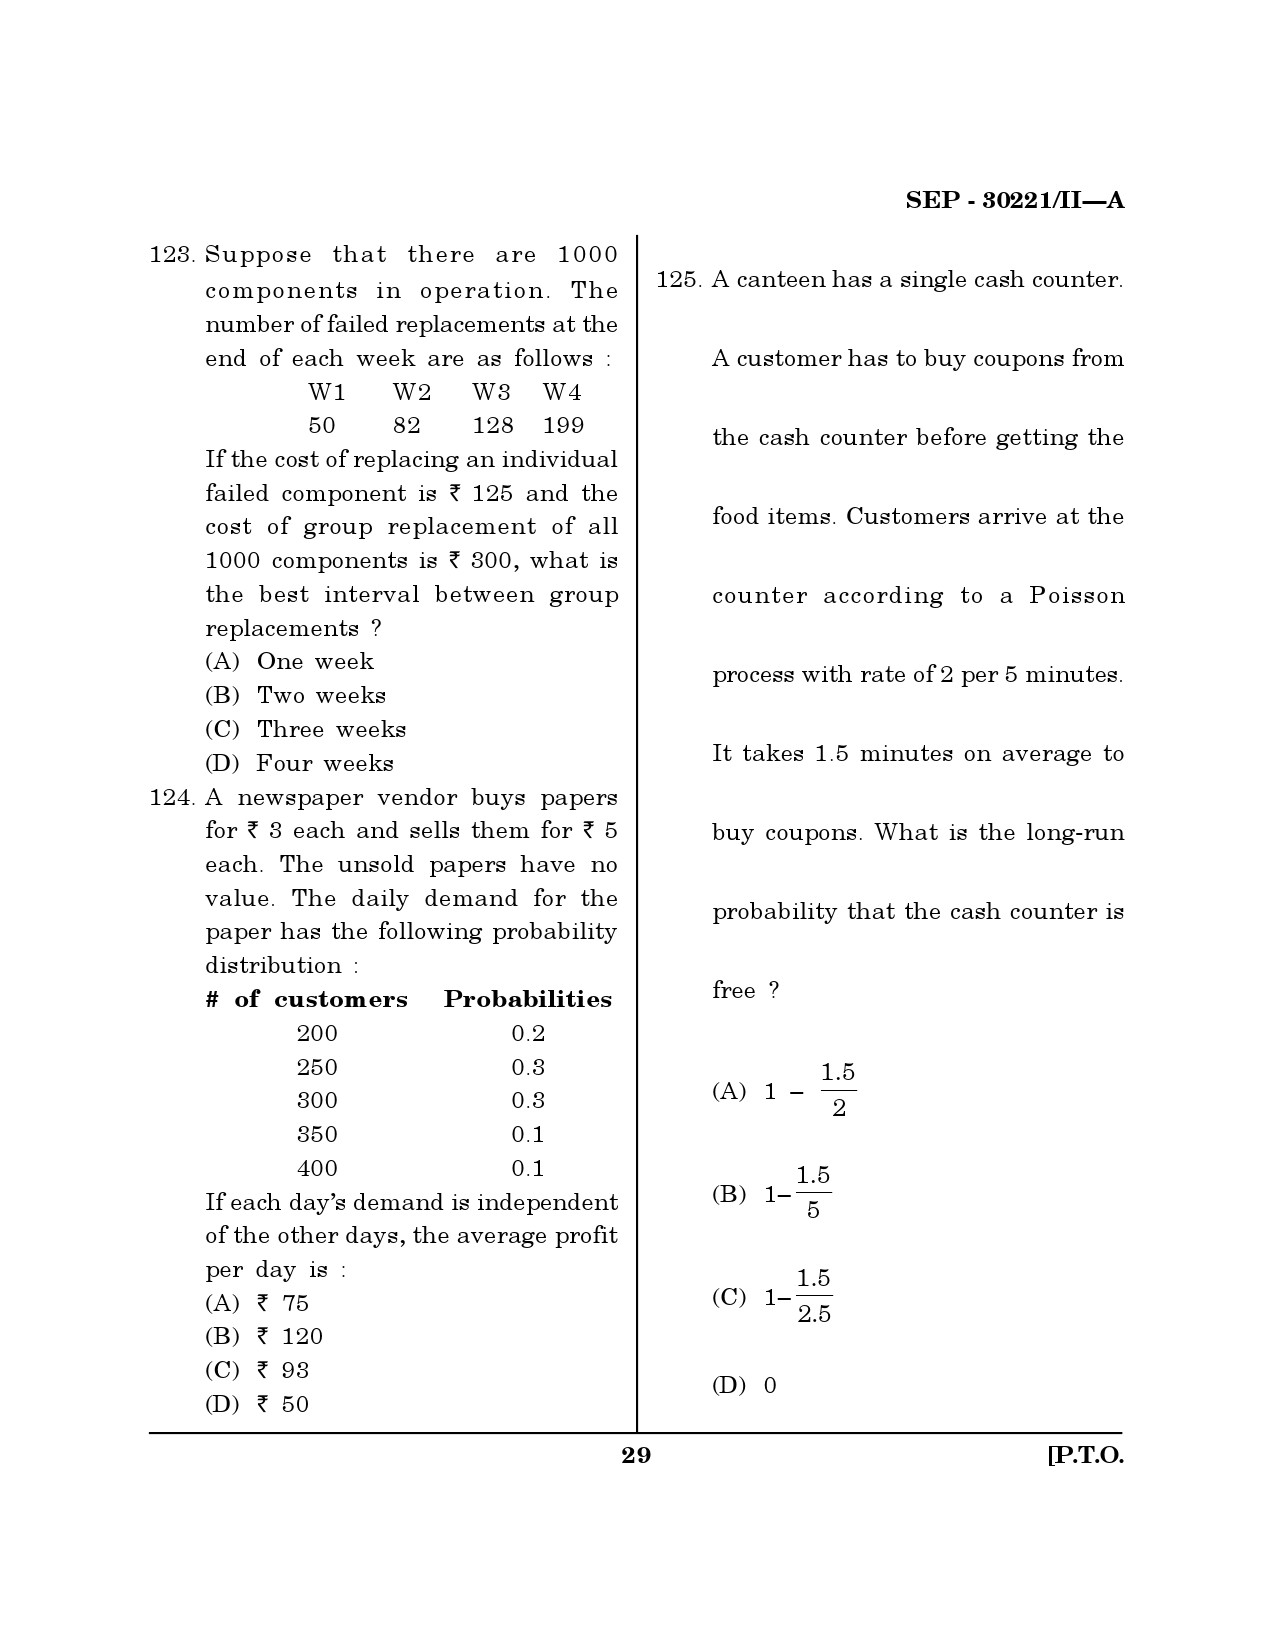 Maharashtra SET Mathematical Sciences Exam Question Paper September 2021 28